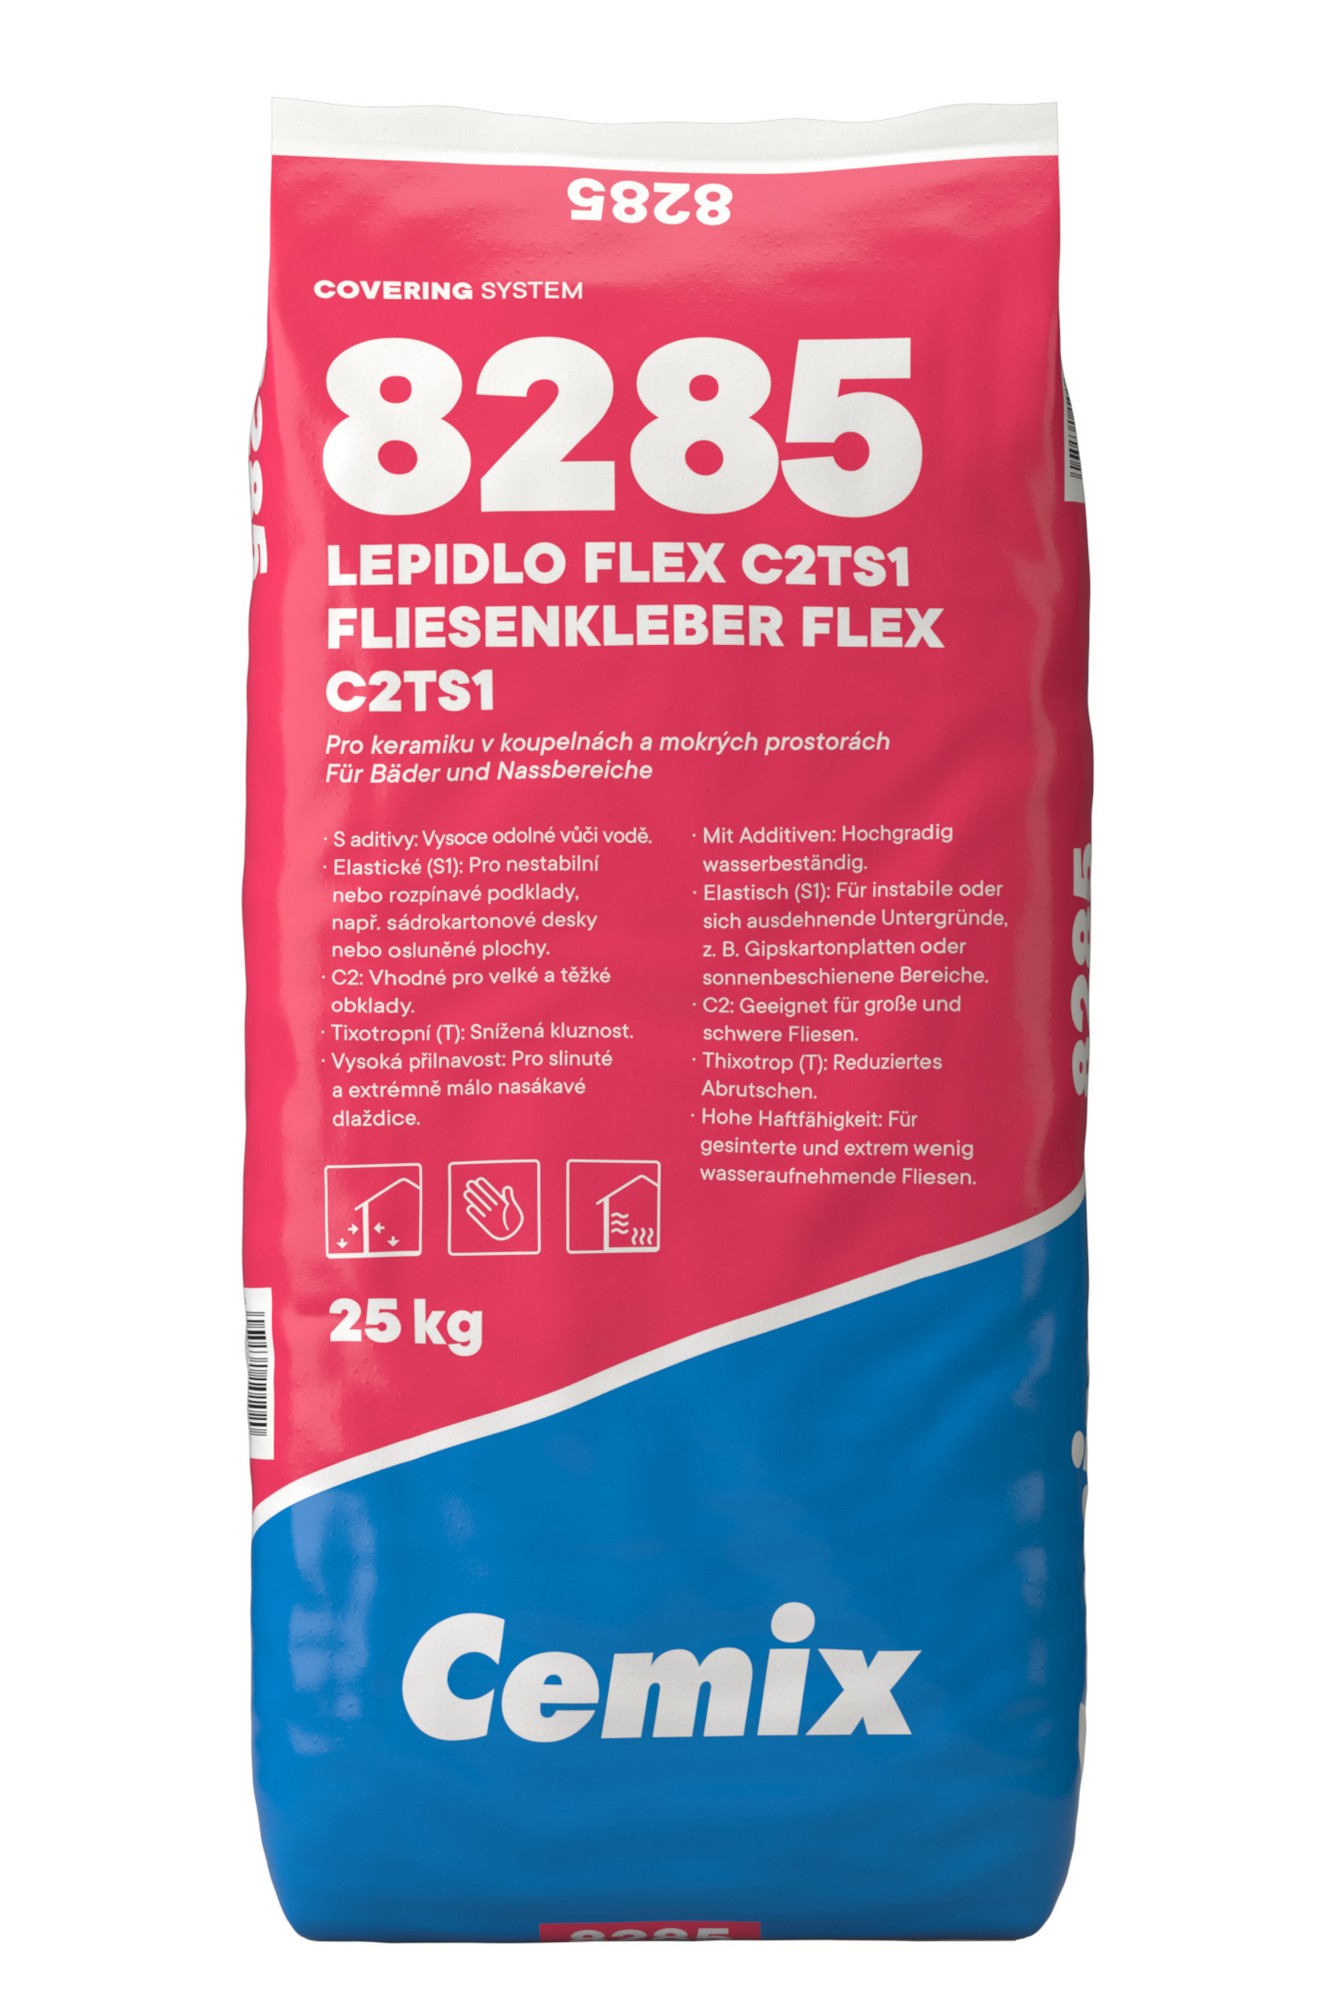 Lepidlo cementové C2T S1 Cemix 8285 FLEX 25 kg